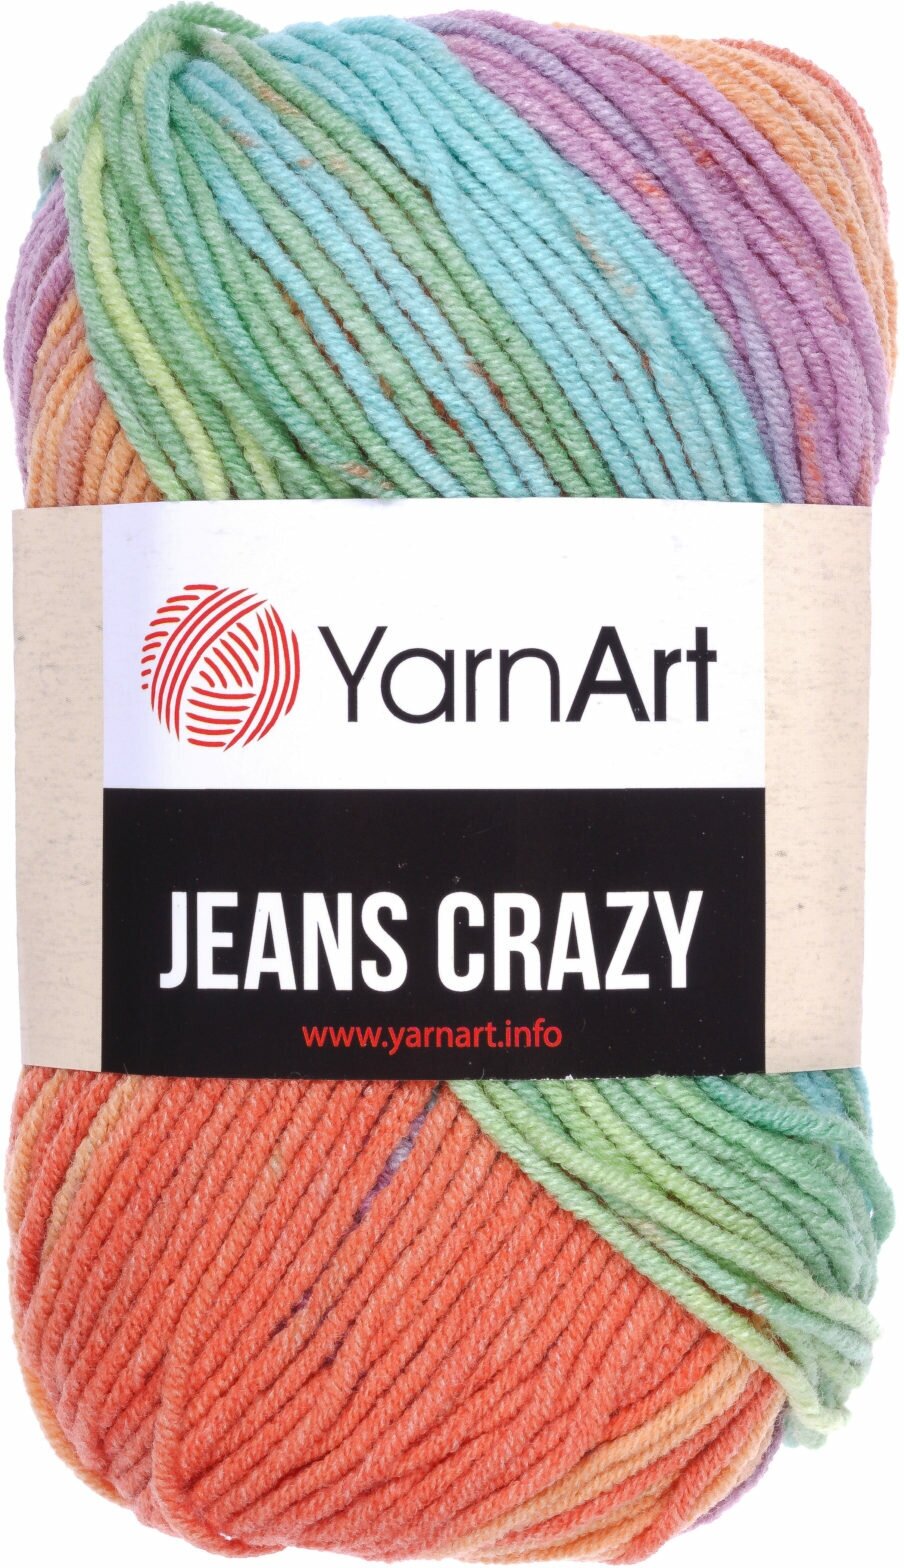 Пряжа YarnArt Jeans CRAZY оранжевый-салатовый-бирюзовый-сиреневый батик (8202), 55%хлопок/45%акрил, 160м, 50г, 1шт